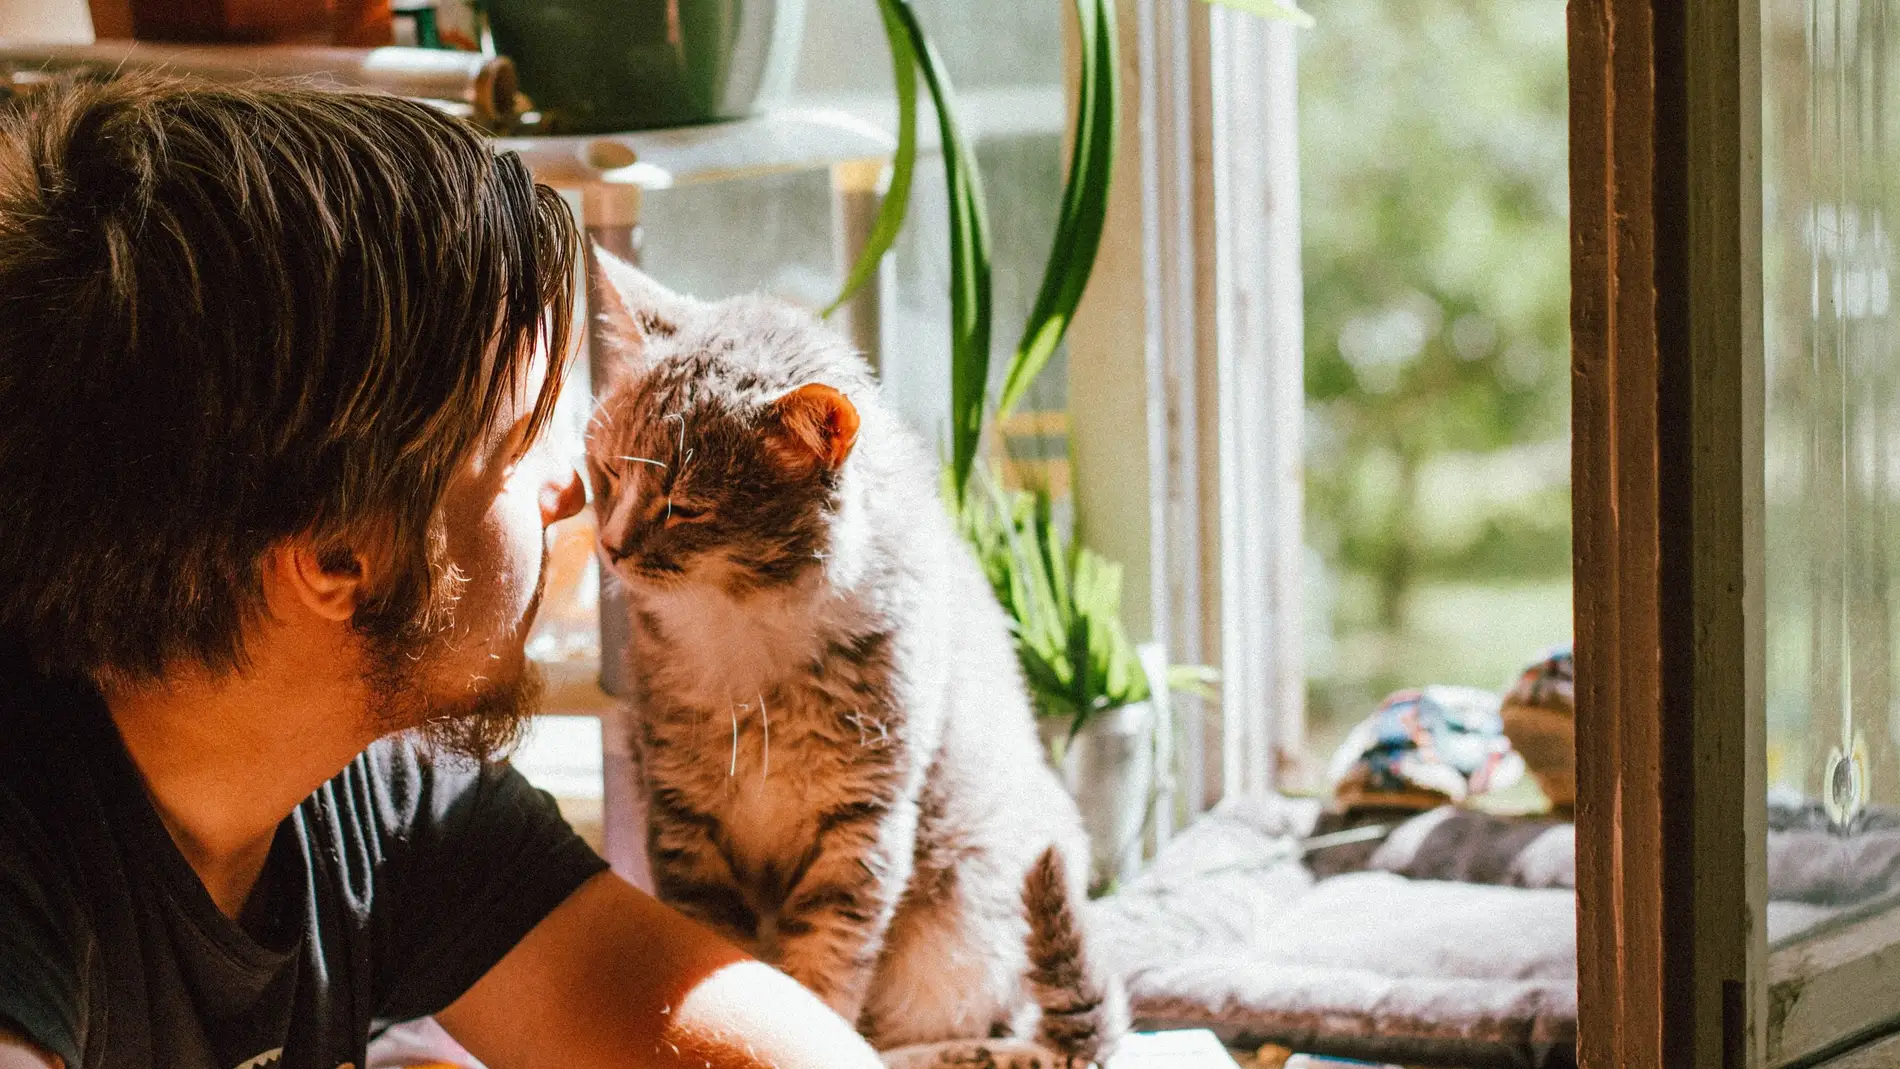 enfocar césped En el piso Los hombres que posan con gatos en apps para ligar tienen menos citas,  según un estudio | Europa FM